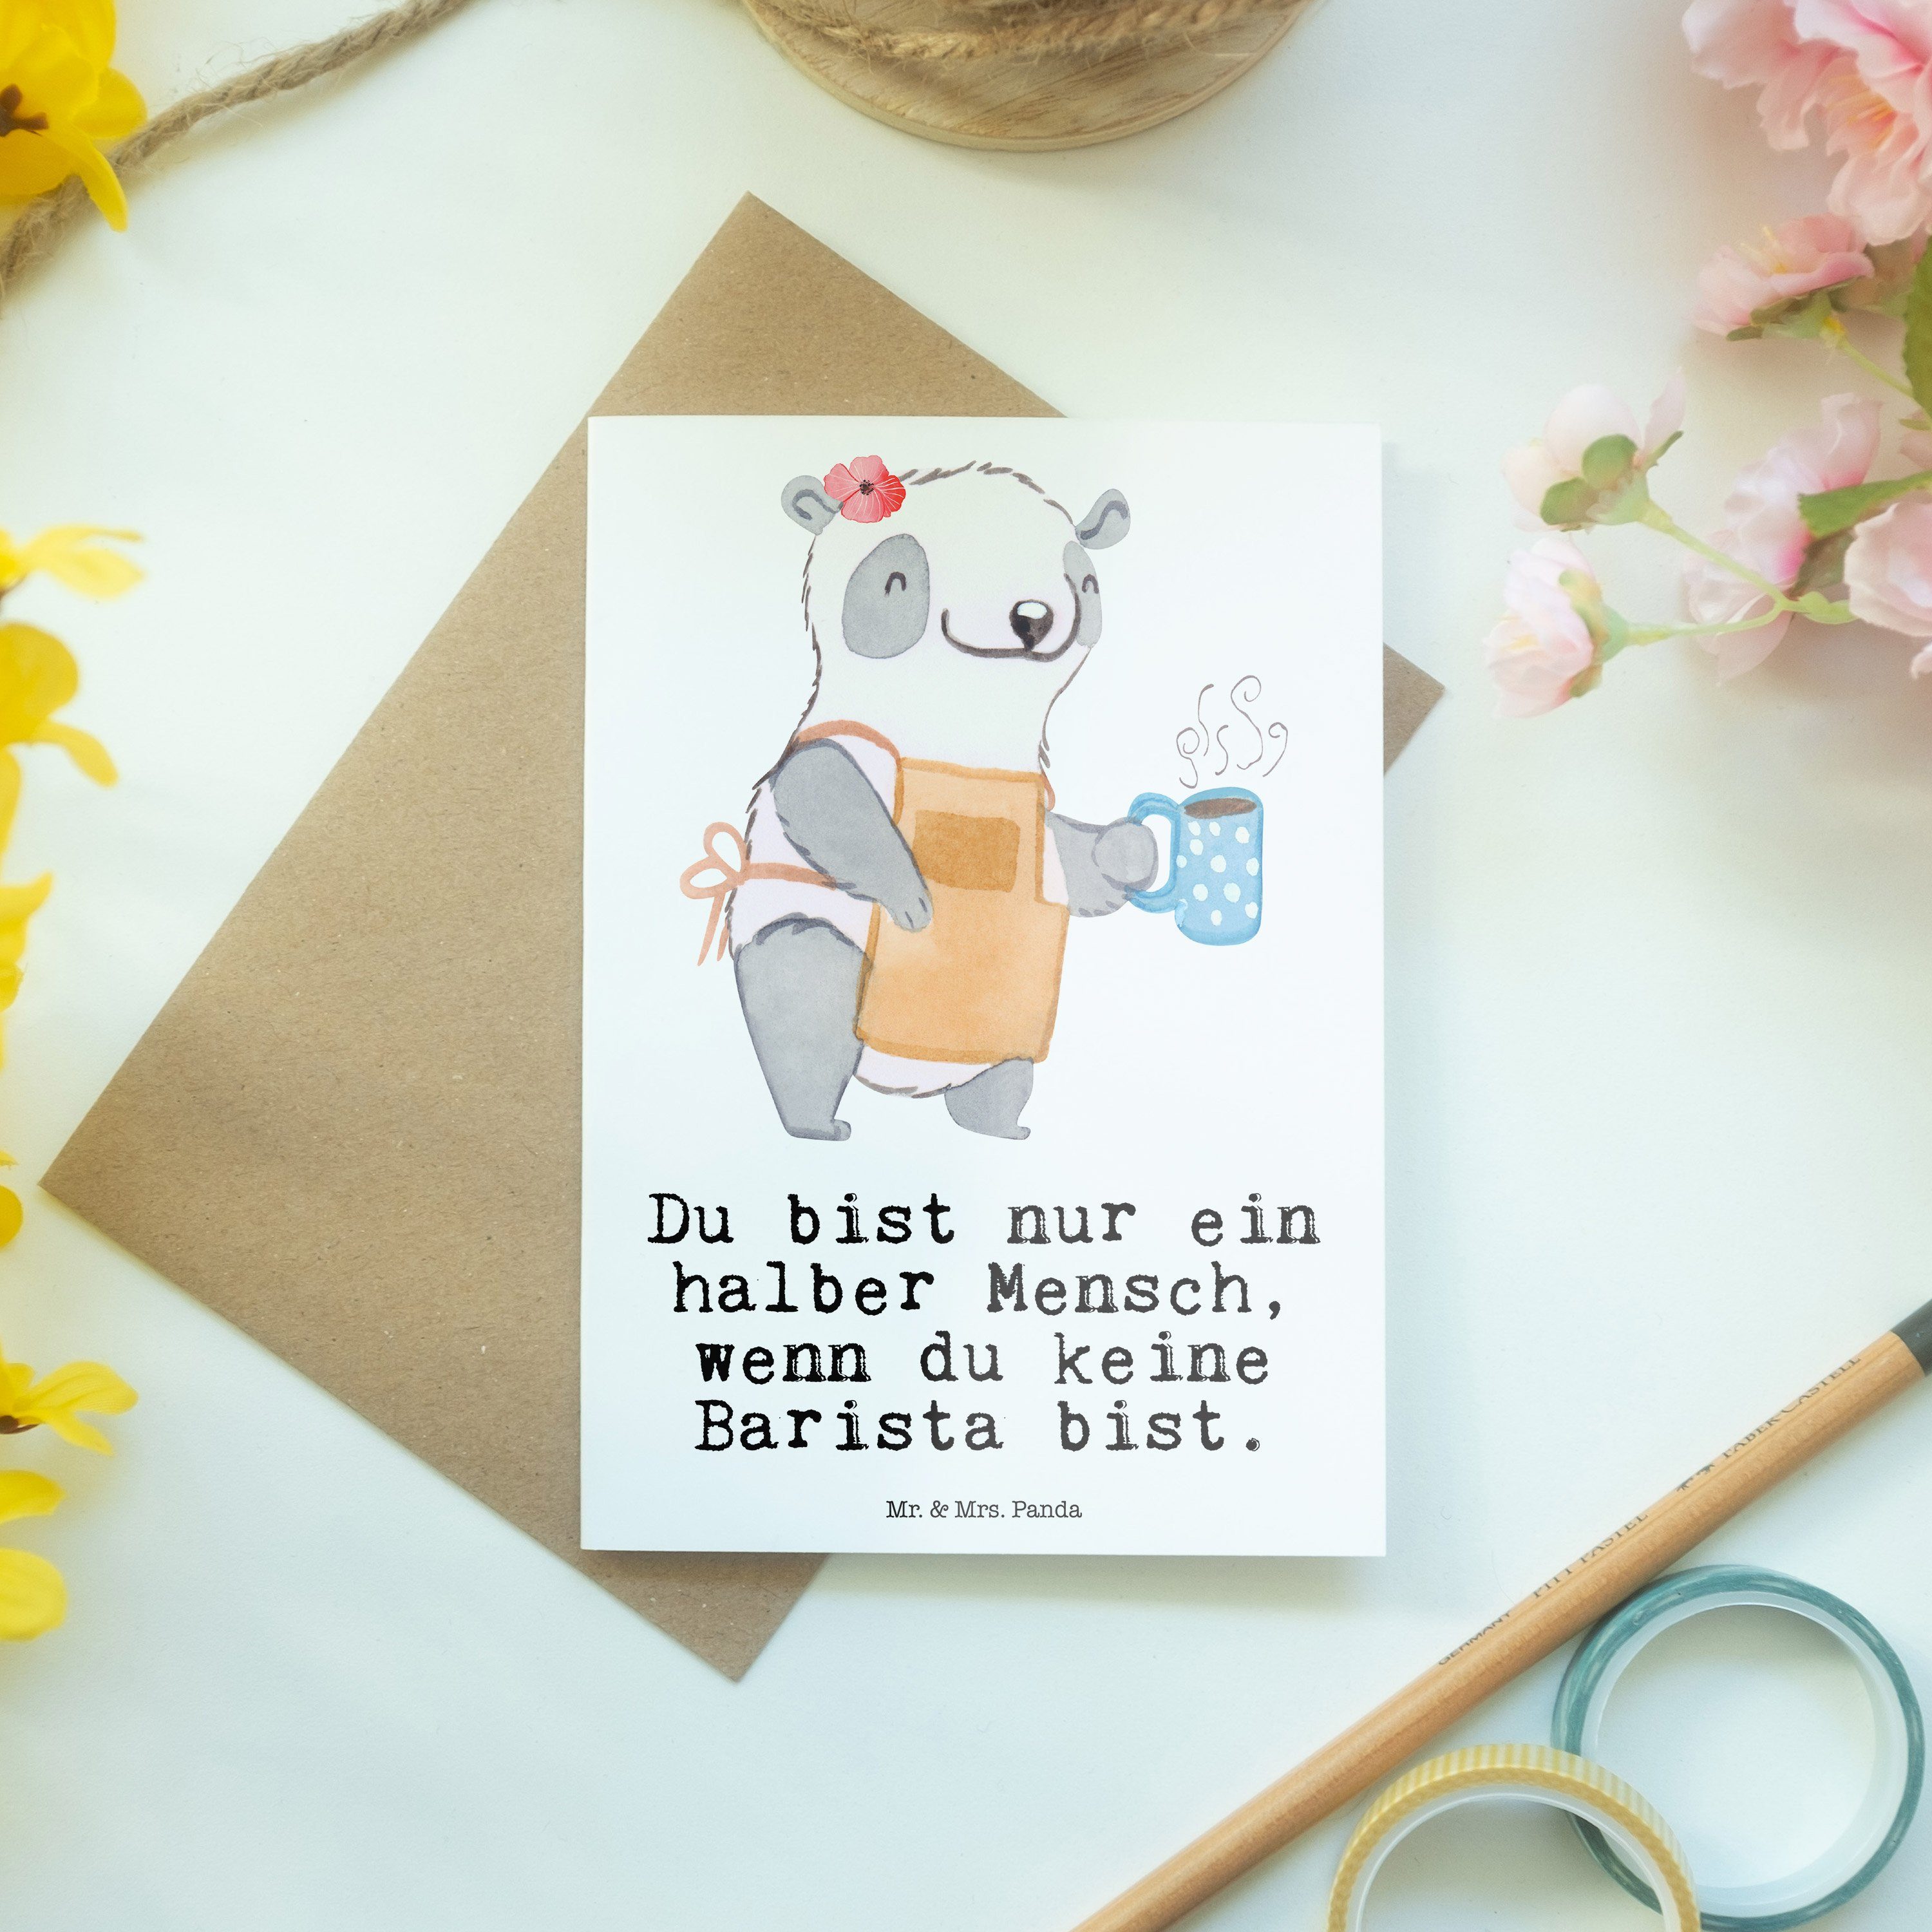 Mr. & Mrs. Panda Firma, Weiß Herz Klappkarte, Glückwunschkar Grußkarte mit Geschenk, Barista - 